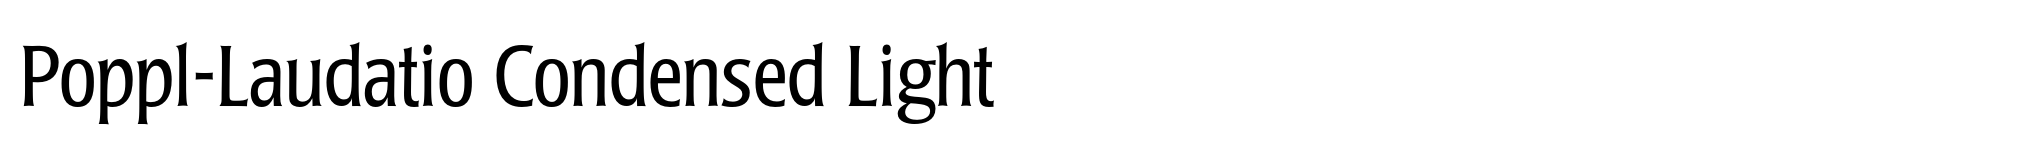 Poppl-Laudatio Condensed Light image